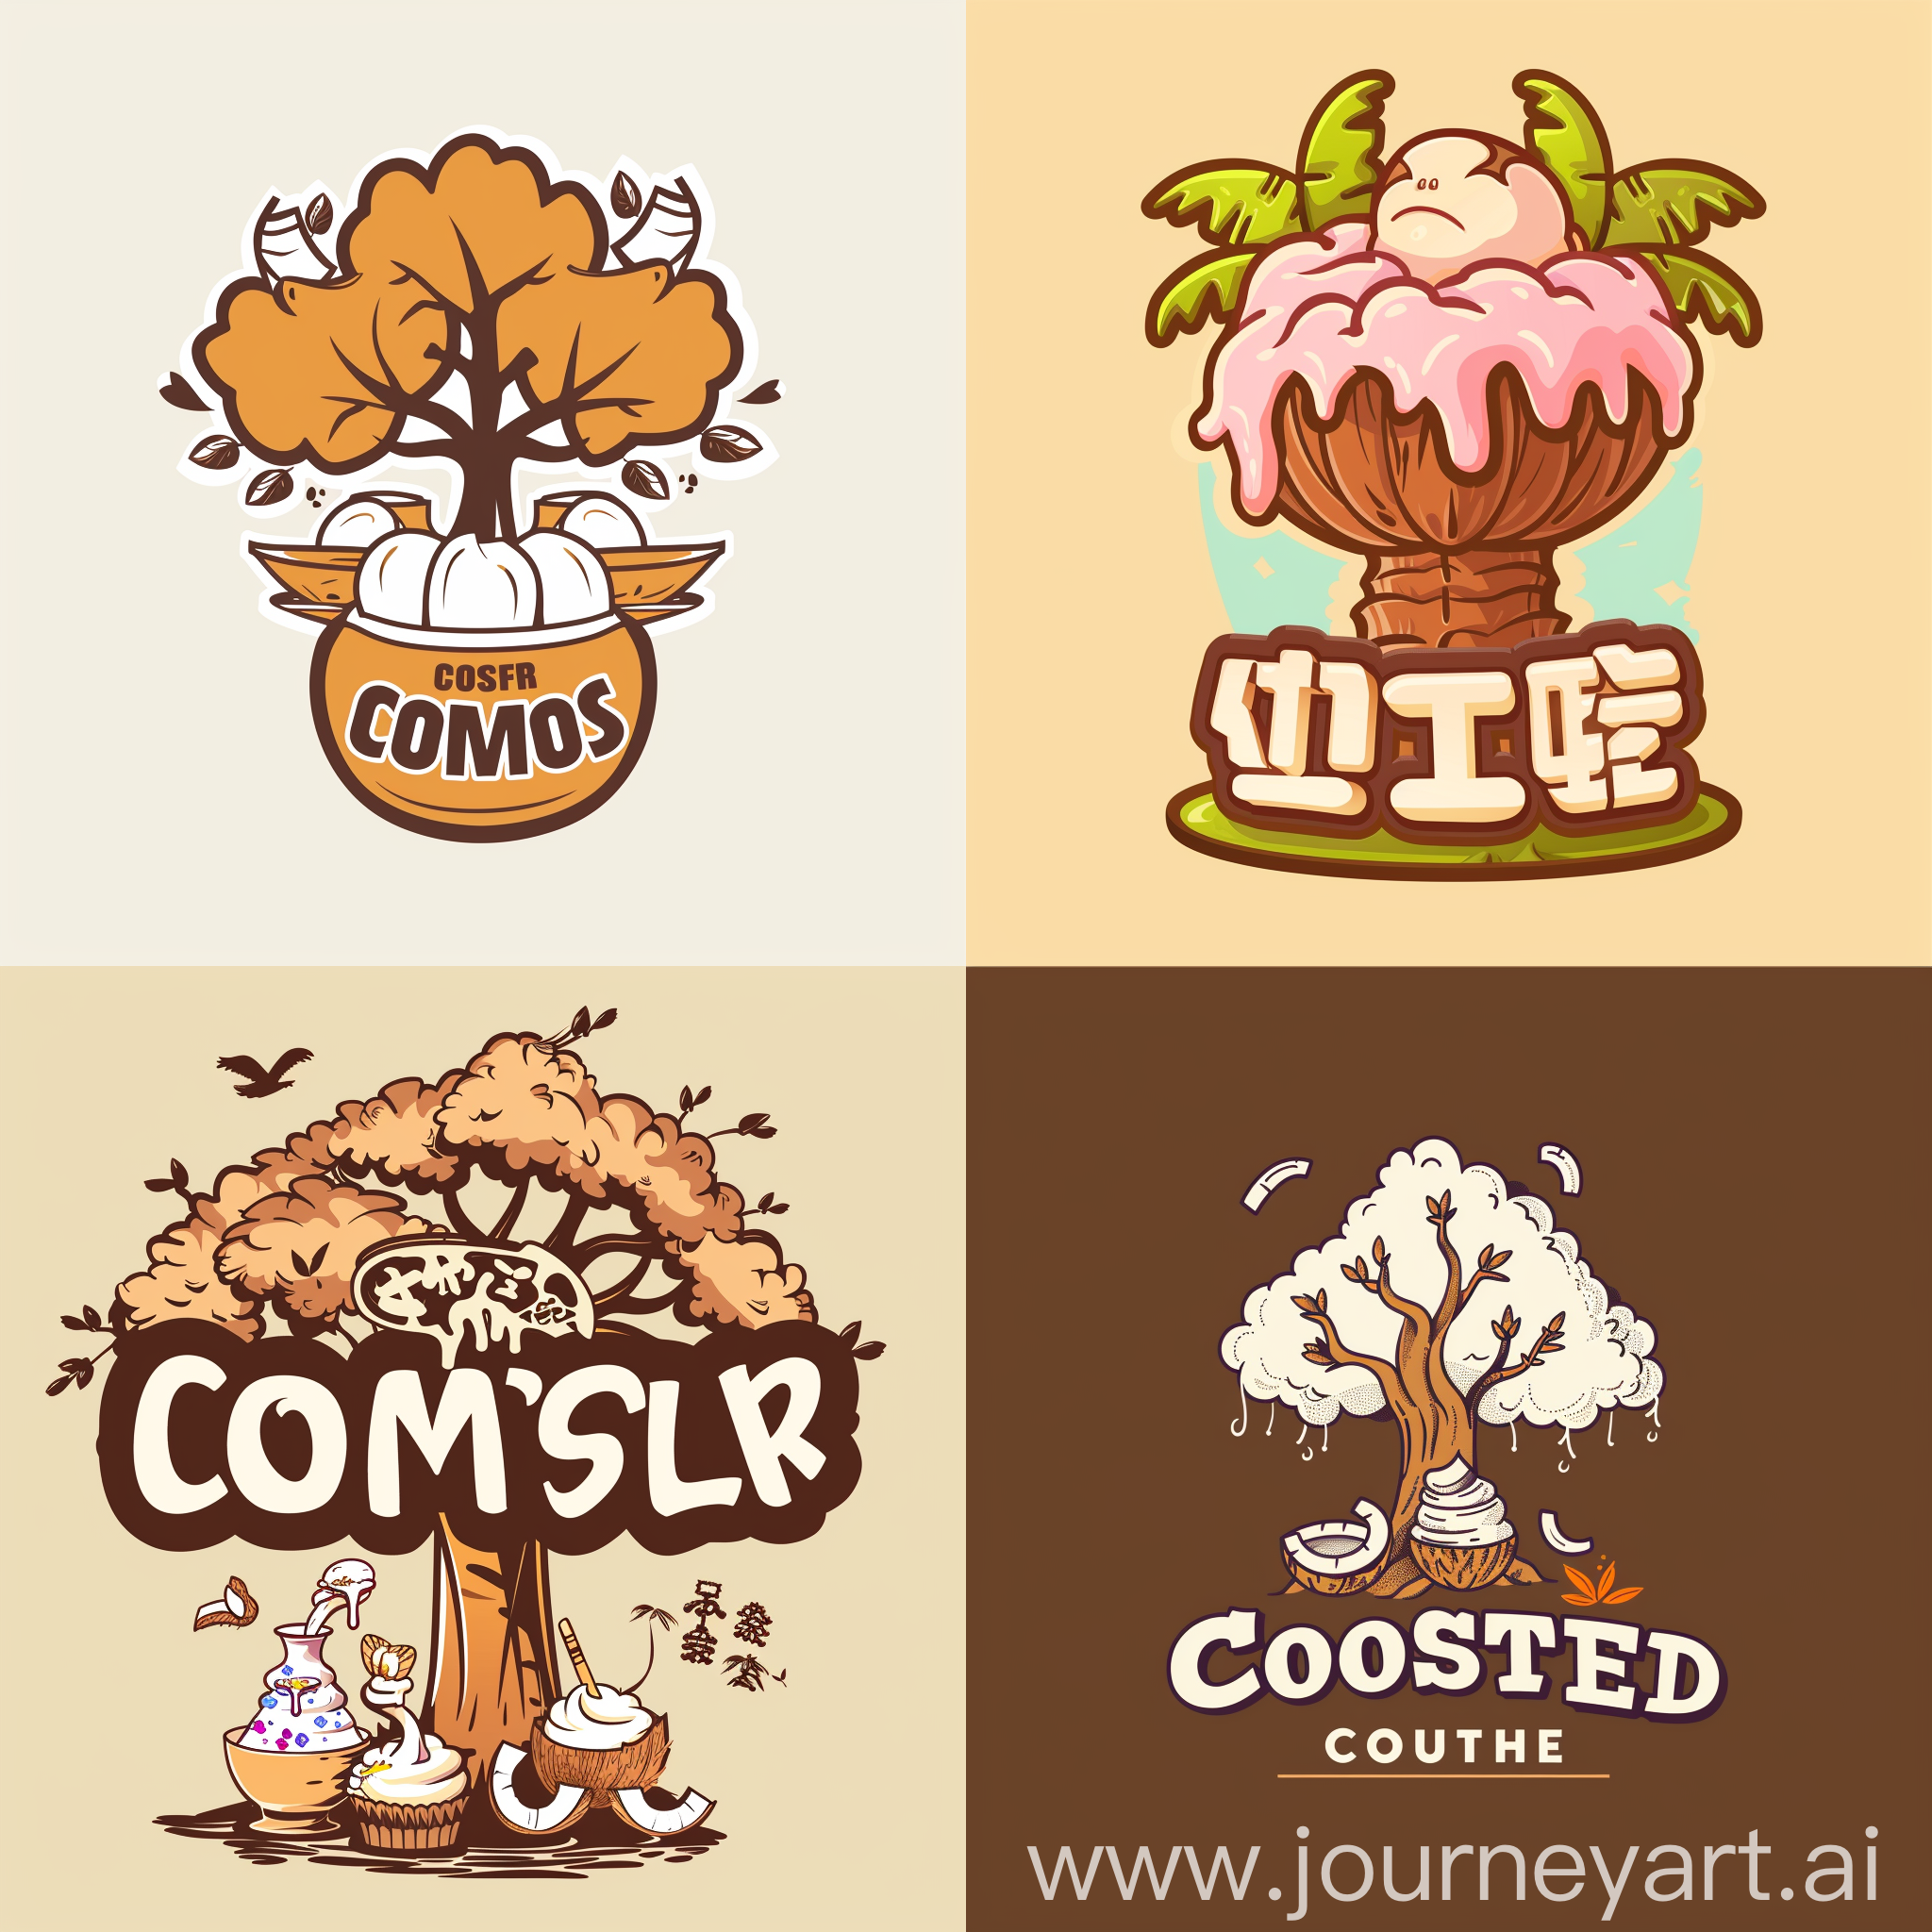 椰甜奶茶甜品店创意logo,要有椰树的概念以及椰子的英文，甜品要有冰淇淋的样子